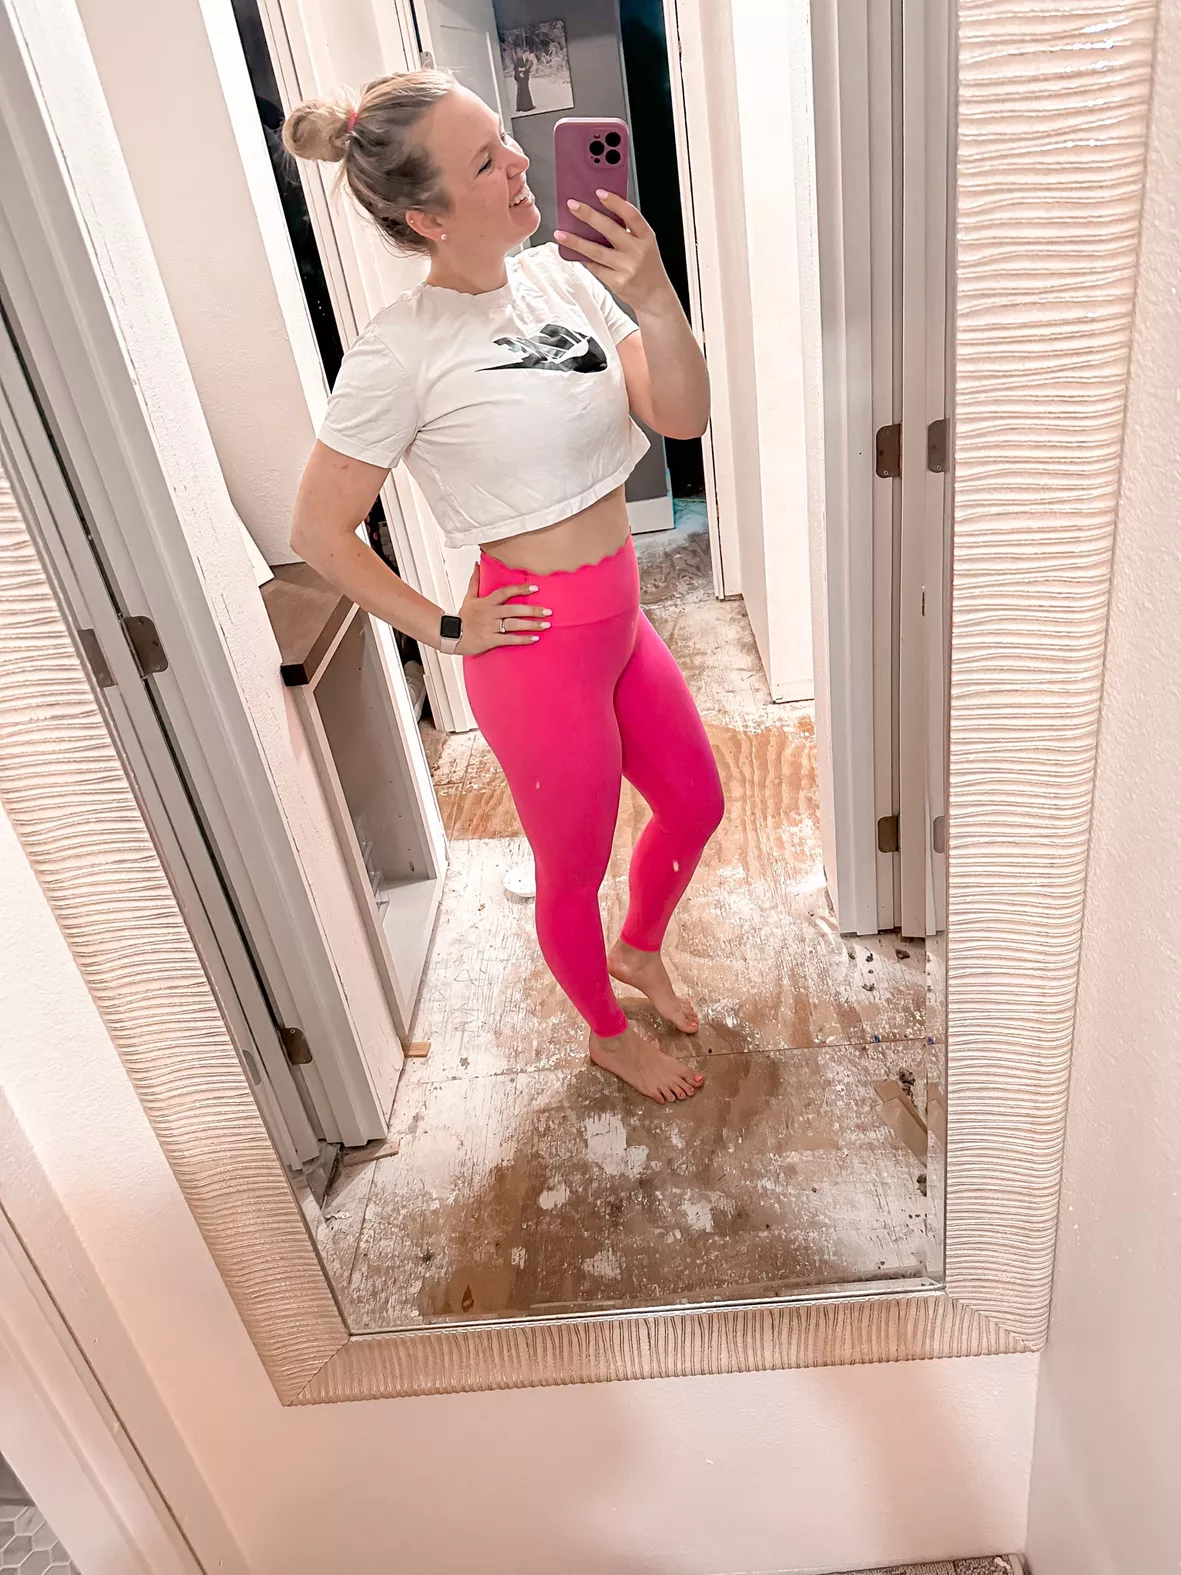 Rosa Scallop Sports Bra - Miami Vice Pink